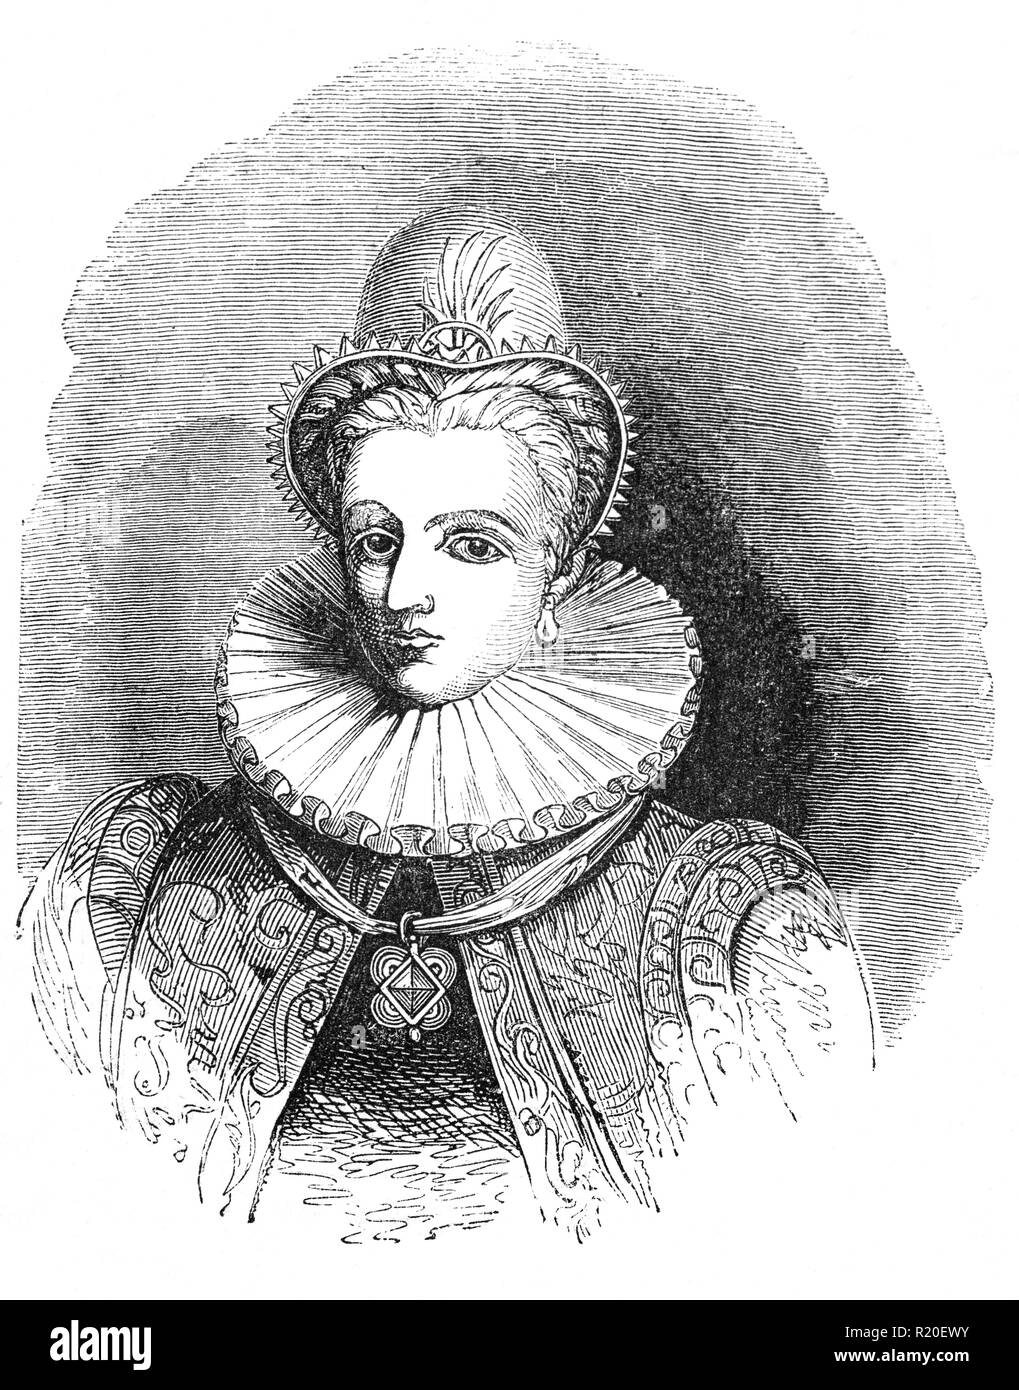 Anna von Dänemark (1574-1619) war Königin von Schottland, England und Irland durch die Ehe mit König James VI. und I. Sie James im Jahr 1589 im Alter von 15 Jahren verheiratet und gebar ihm drei Kinder, die überlebten, Kindheit, einschließlich der künftigen Charles I. Erscheint sie James zuerst geliebt zu haben, aber die paar allmählich Trieb und schließlich auseinander lebten, wenn gegenseitiger Respekt und ein gewisses Maß an Zuneigung überlebt. In England, Anne verschoben ihre Energien von Fraktionellen Politik Schirmherrschaft der Künste und ihrer eigenen herrlichen Hof gebaut, Hosting eine der reichsten kulturellen Salons in Europa. Stockfoto